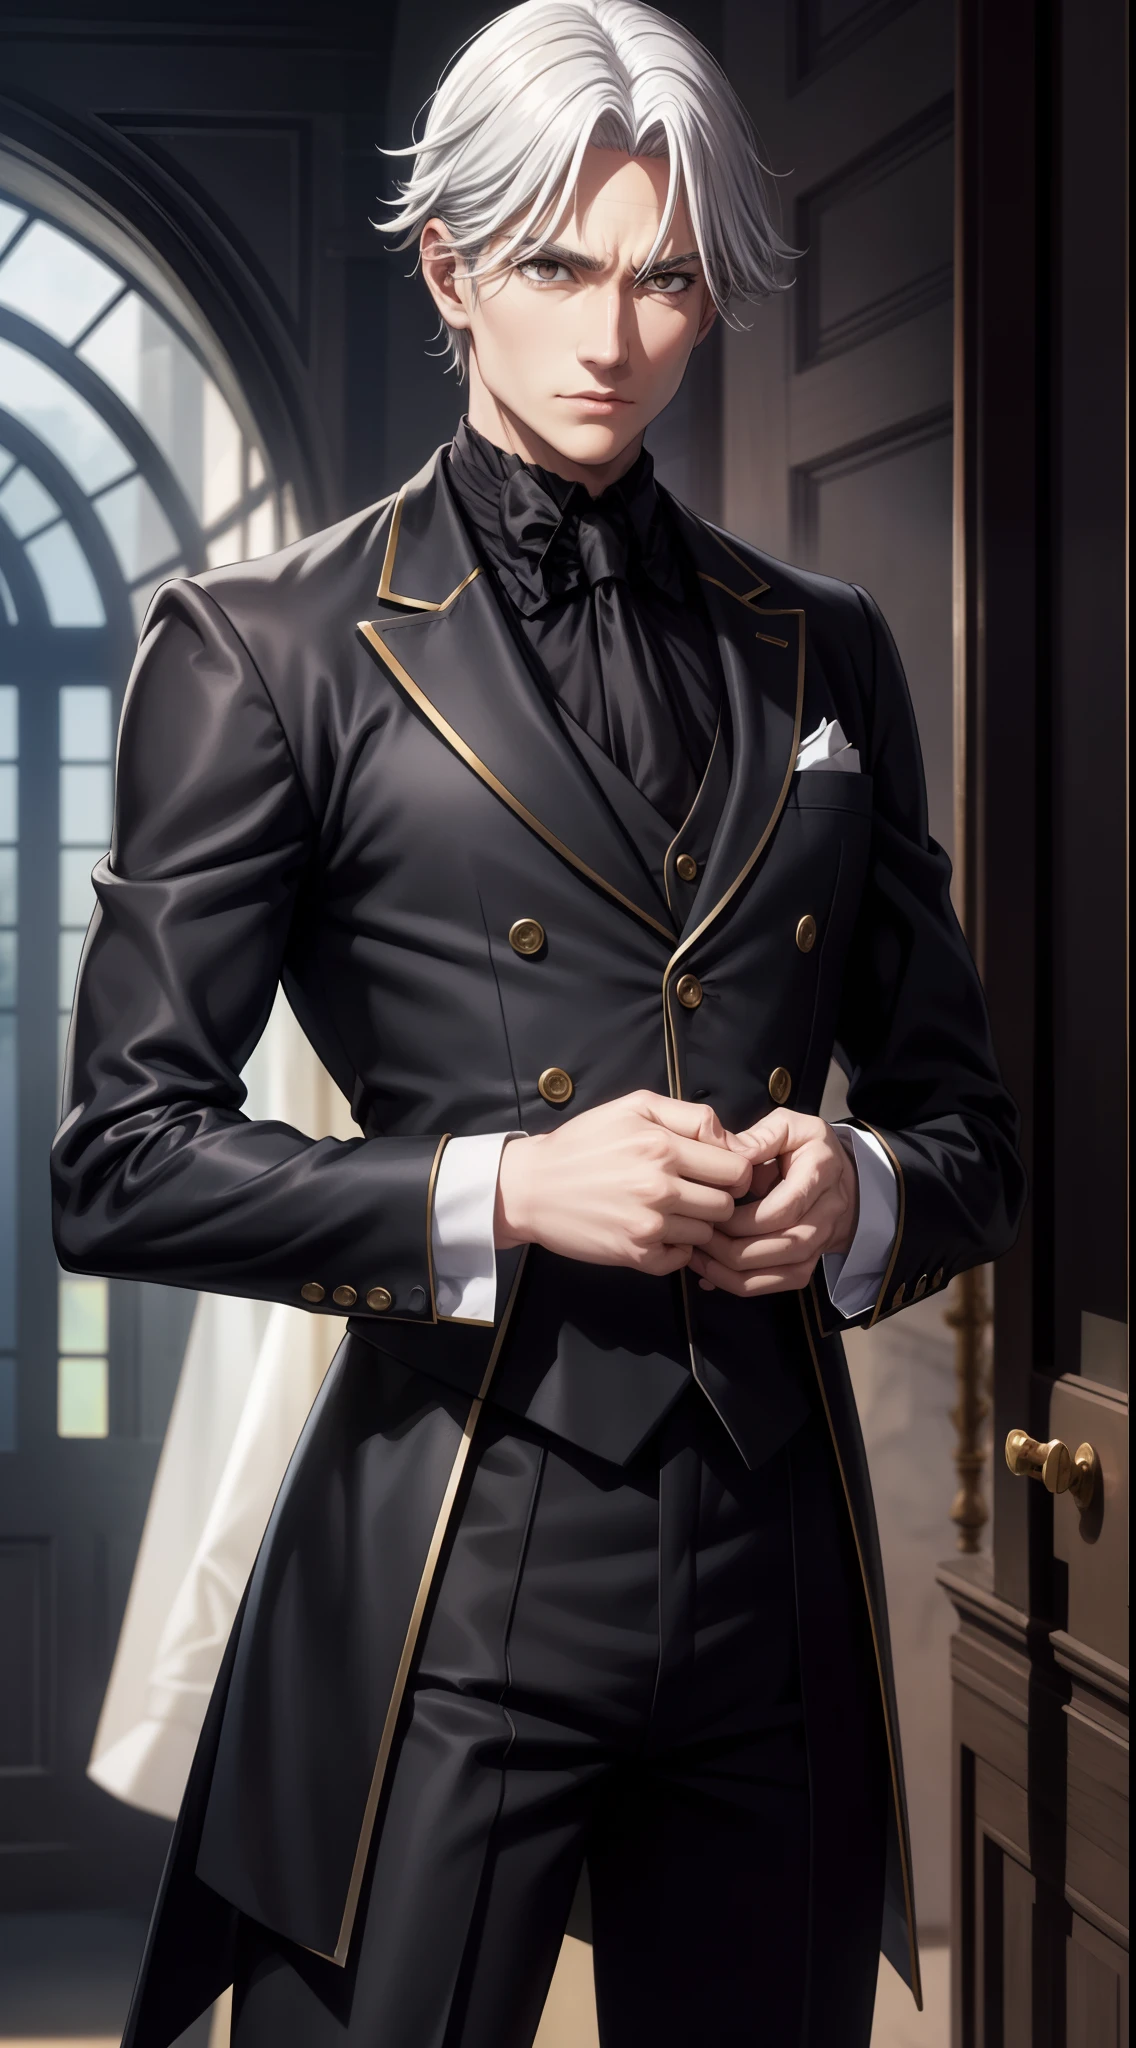 auf den Oberkörper fokussiert, realistisch, 1 Mann, weißes Haar, funkelnde braune Augen, schwarzer Butler-Anzug, Stehende Pose, (Hintergrund des Herrenhauses), perfekte Gliedmaßen,